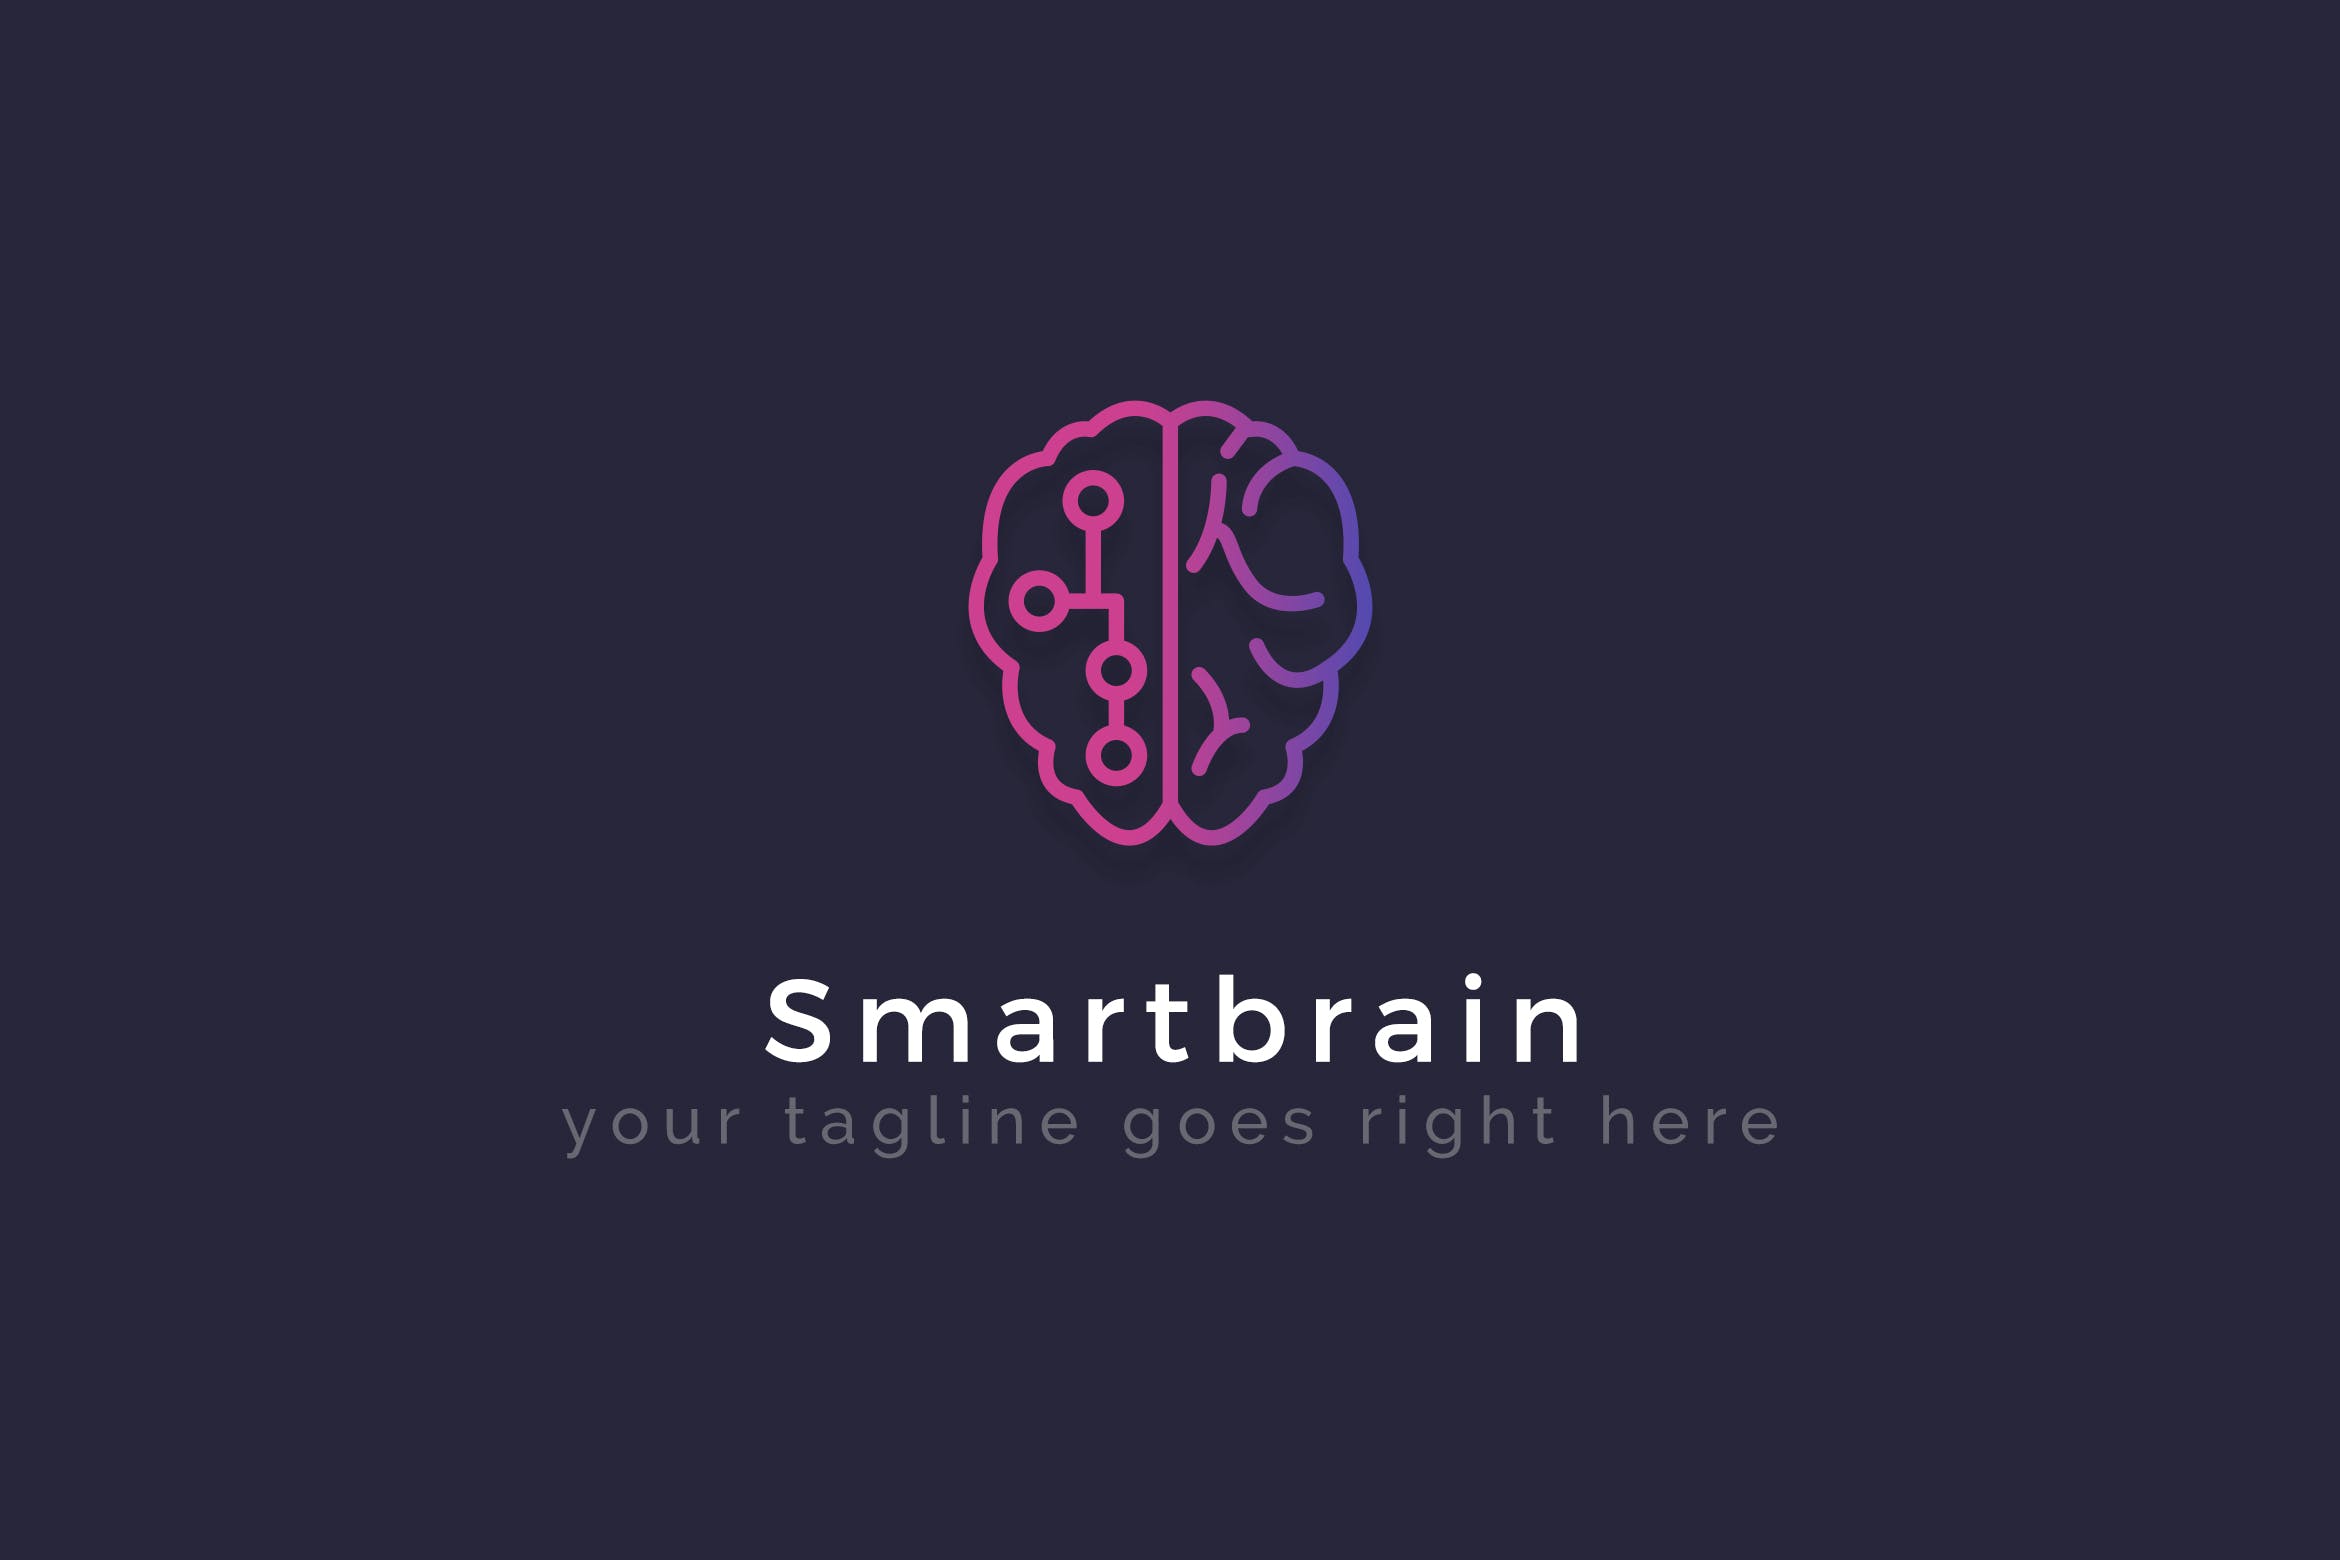 智能大脑AI品牌Logo设计蚂蚁素材精选模板 Smartbrain – Creative Logo Template插图